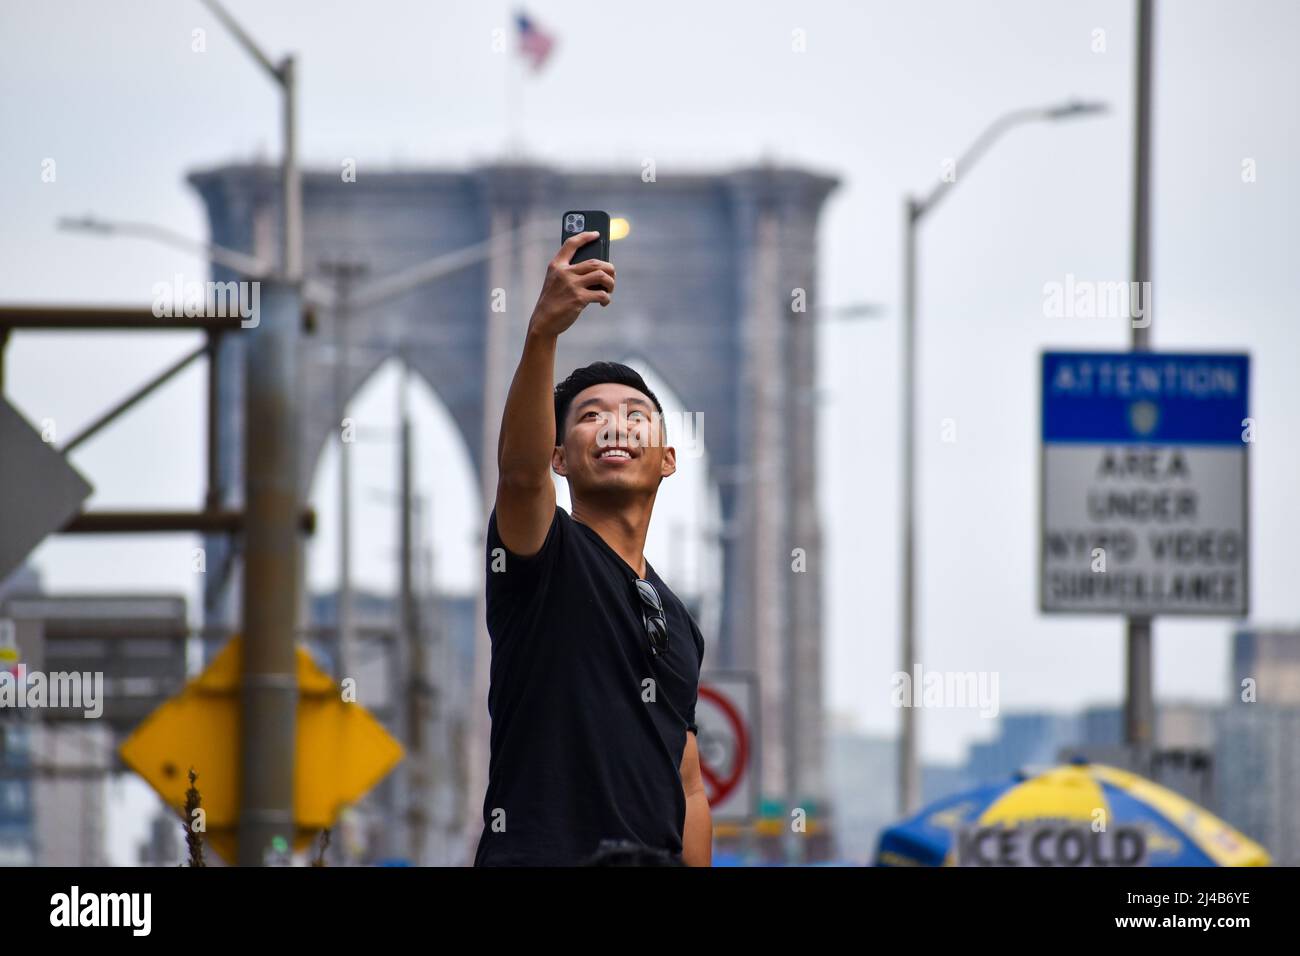 Les touristes reviennent à New York. Un touriste est vu prendre un selfie devant le pont de Brooklyn à New York le 13 avril 2022. Banque D'Images